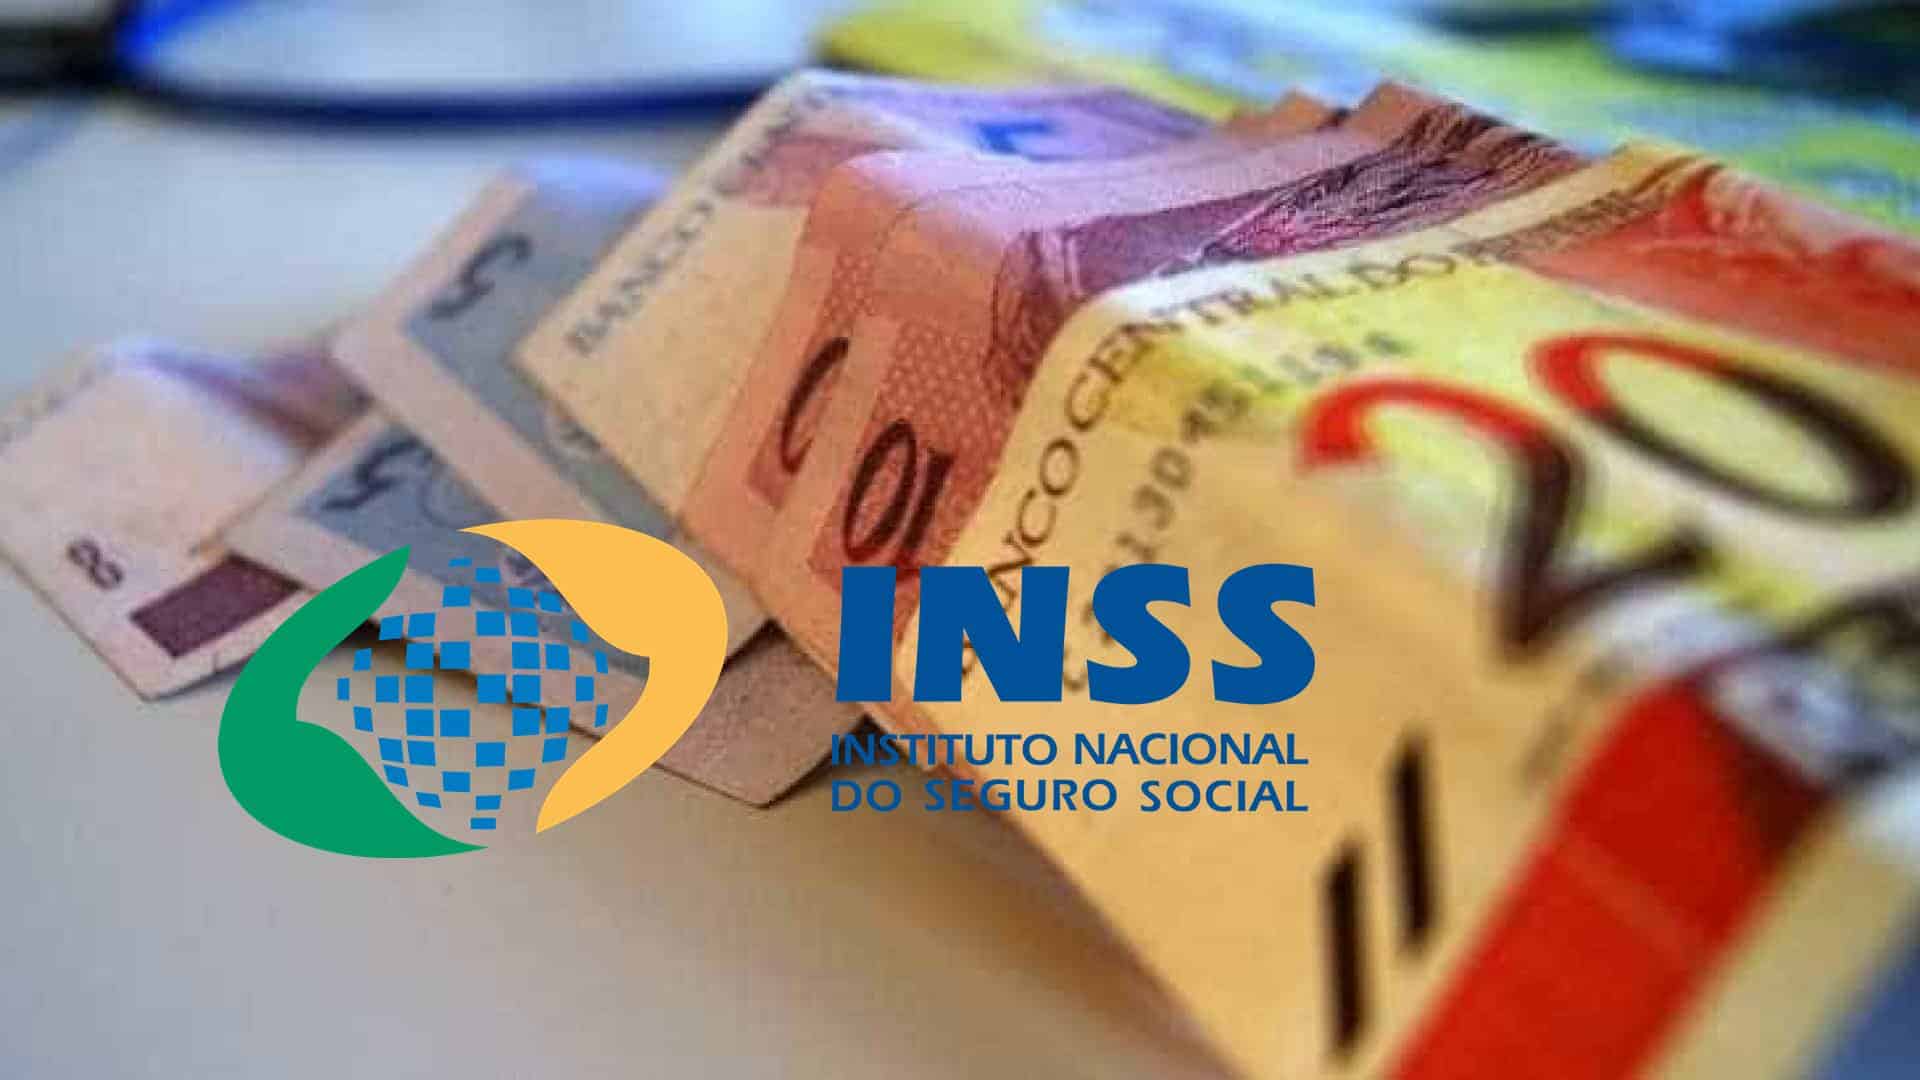 INSS oficializa aumento da margem do empréstimo para aposentados e pensionistas